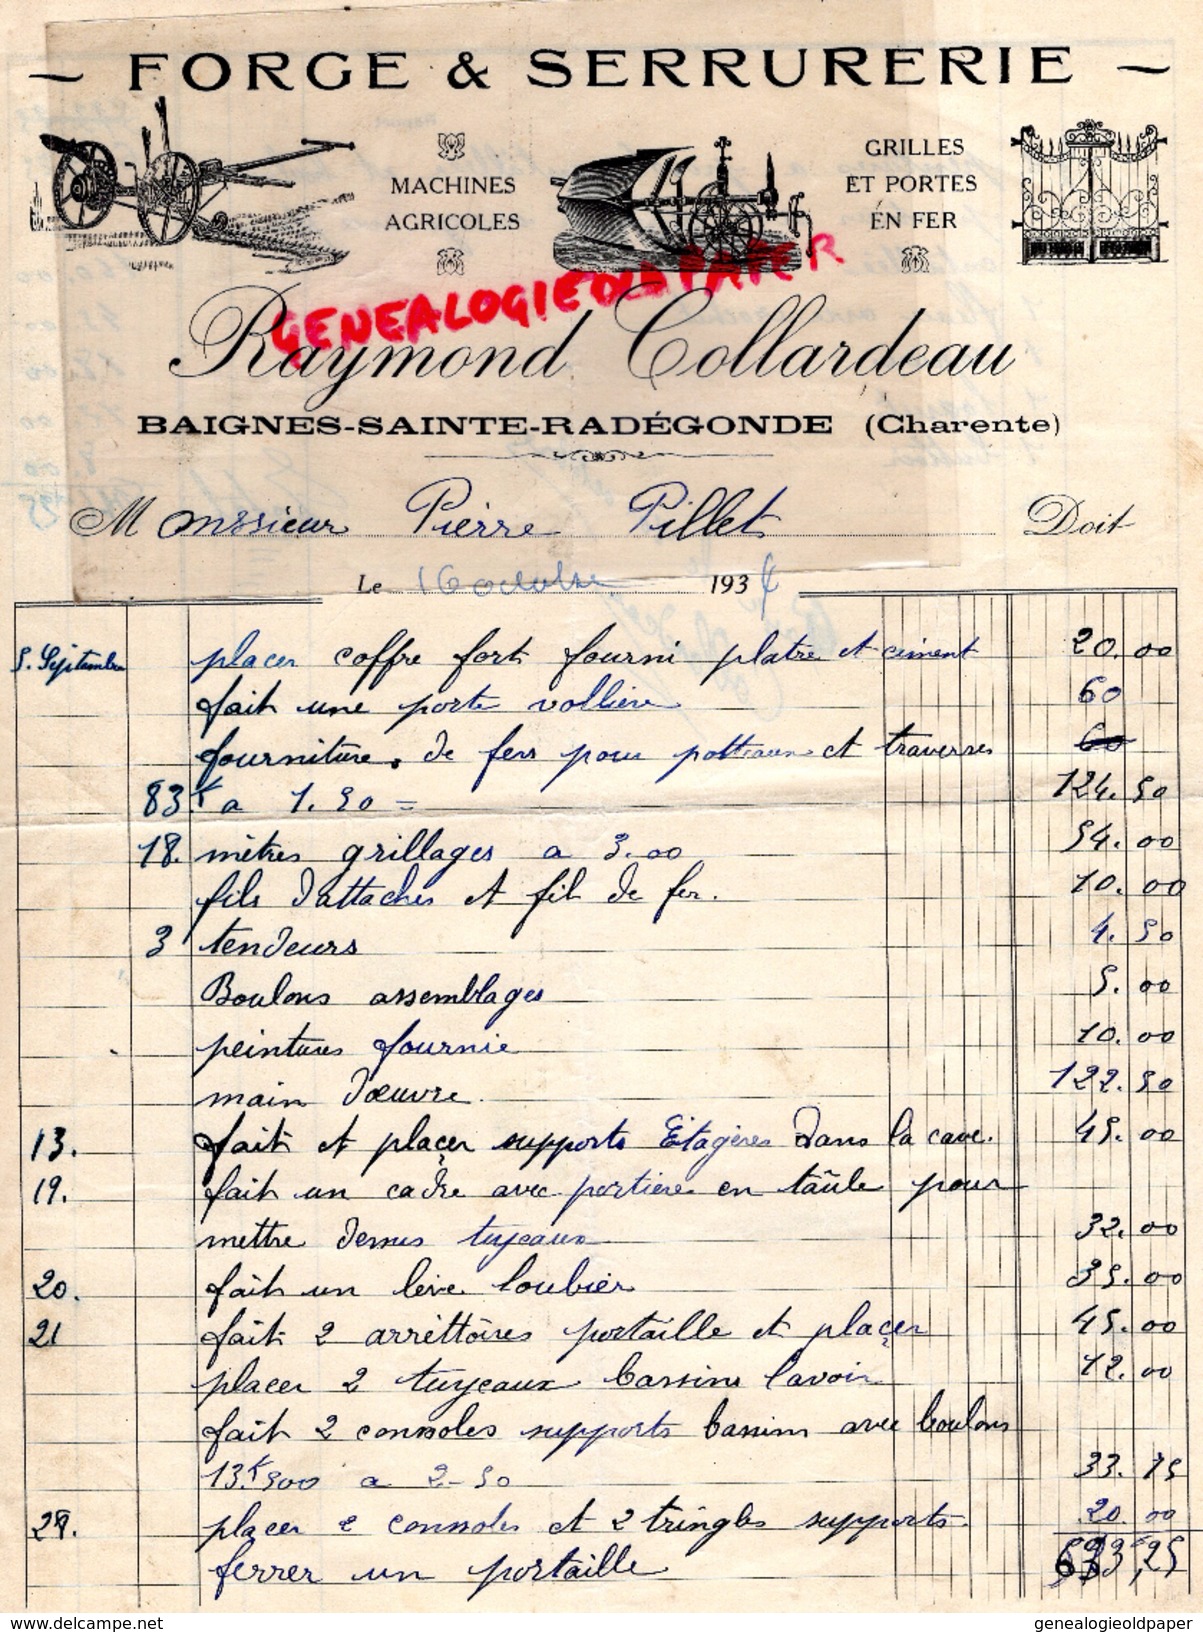 16 - BAIGNES SAINTE RADEGONDE- BELLE FACTURE RAYMOND COLLARDEAU- FORGE SERRURERIE- FORGERON- 1934 - Petits Métiers